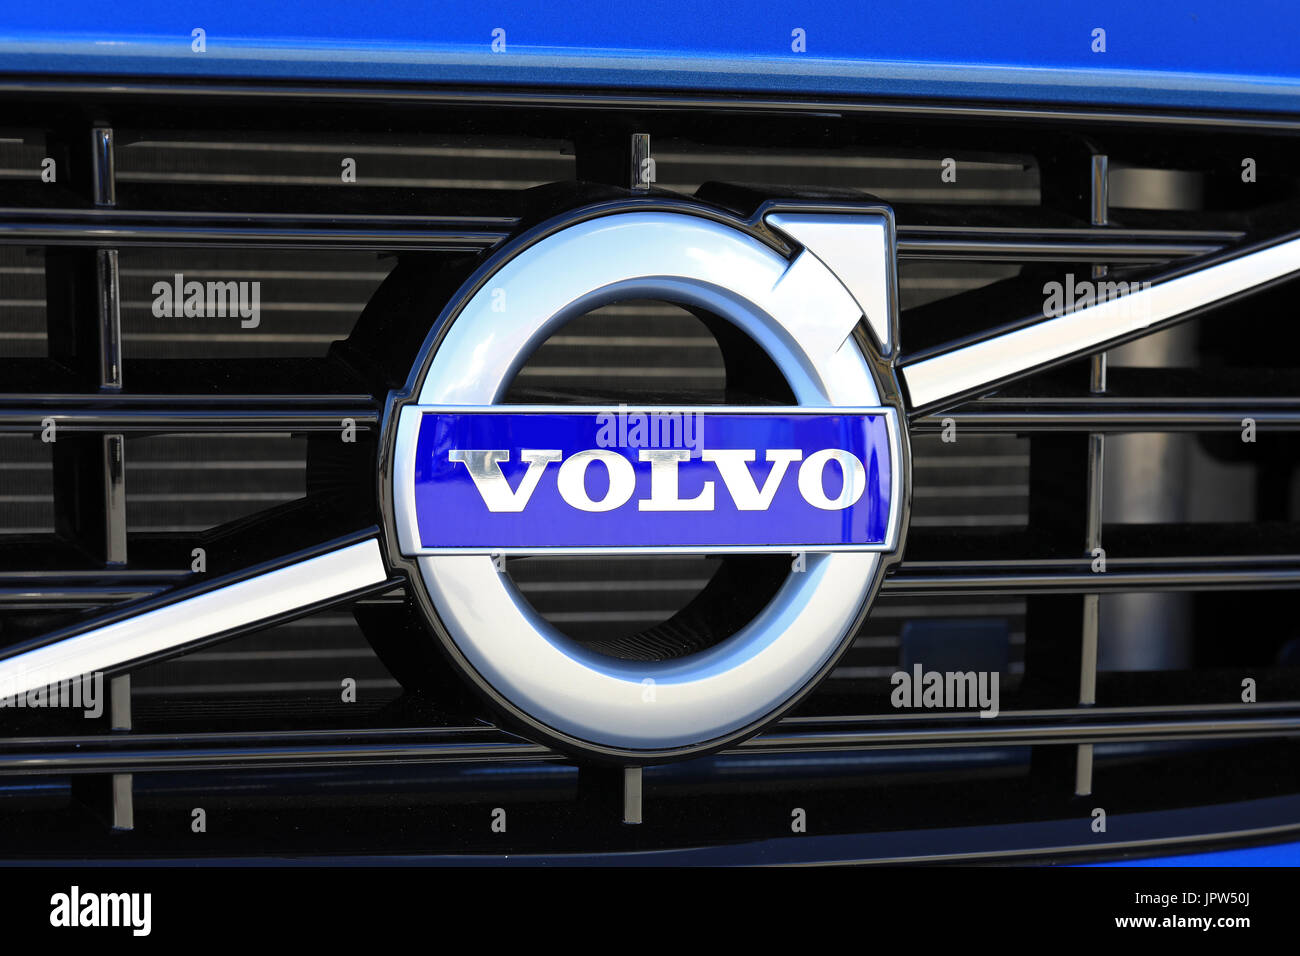 TURKU, Finlandia - 29 luglio 2017: Segno Volvo sulla griglia di una nuova auto blu. Produttore di automobili Volvo annuncia che tutte le loro nuove vetture lanciato dal 2019 in poi Foto Stock